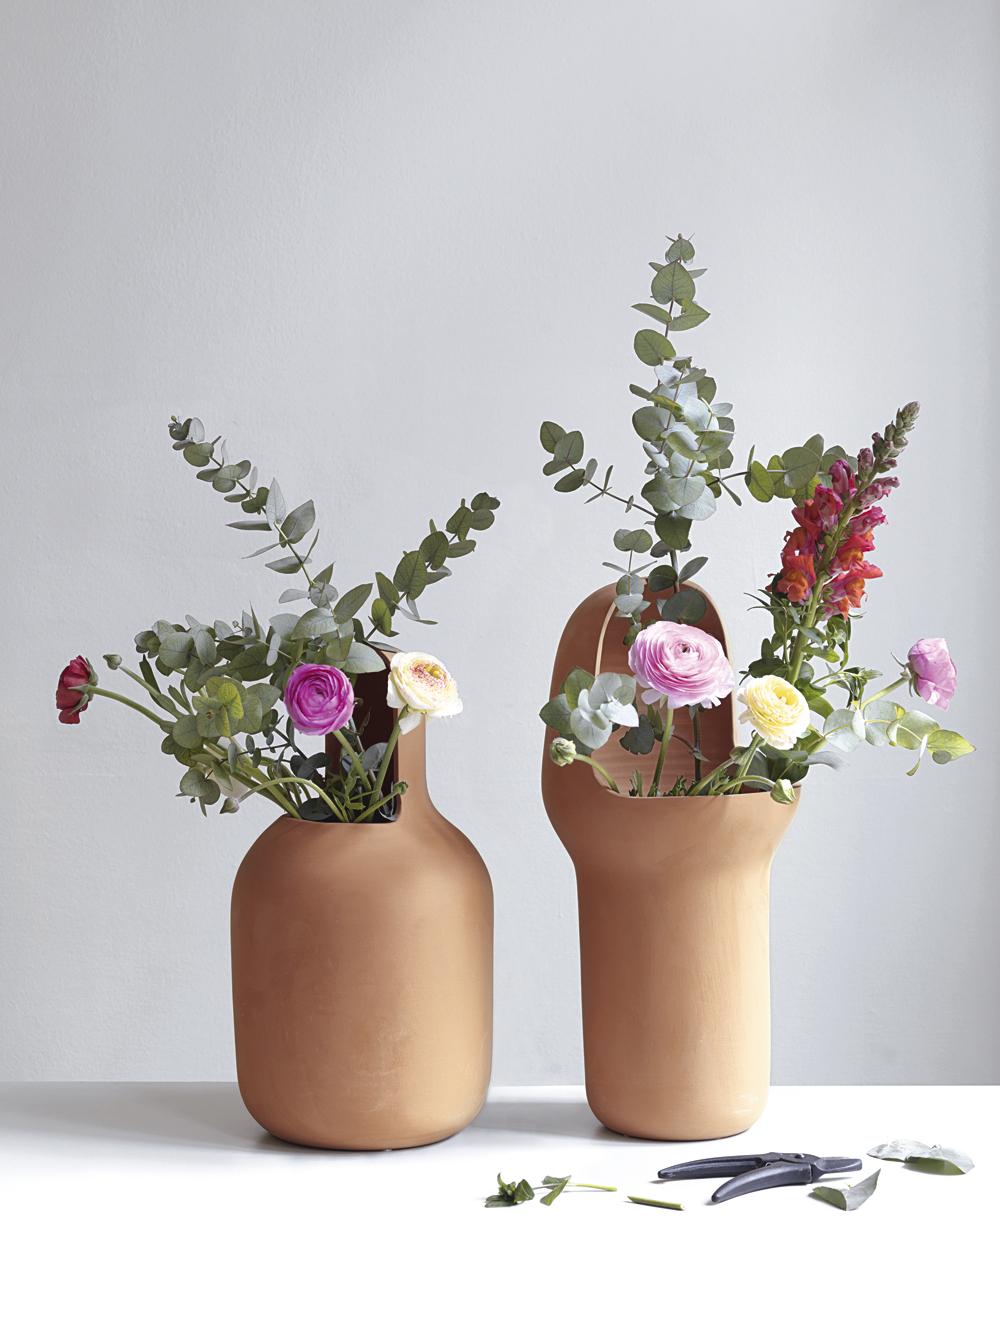 Jaime Hayon entwarf die Gardenia-Vasen in Terrakotta als Ergänzung zu seiner Outdoor-Möbelkollektion. 

Die drei Vasen sind in ihrer Form einzigartig und zeigen das unverwechselbare Design von Hyaon. Diese ikonischen Vasen werden in Handarbeit aus